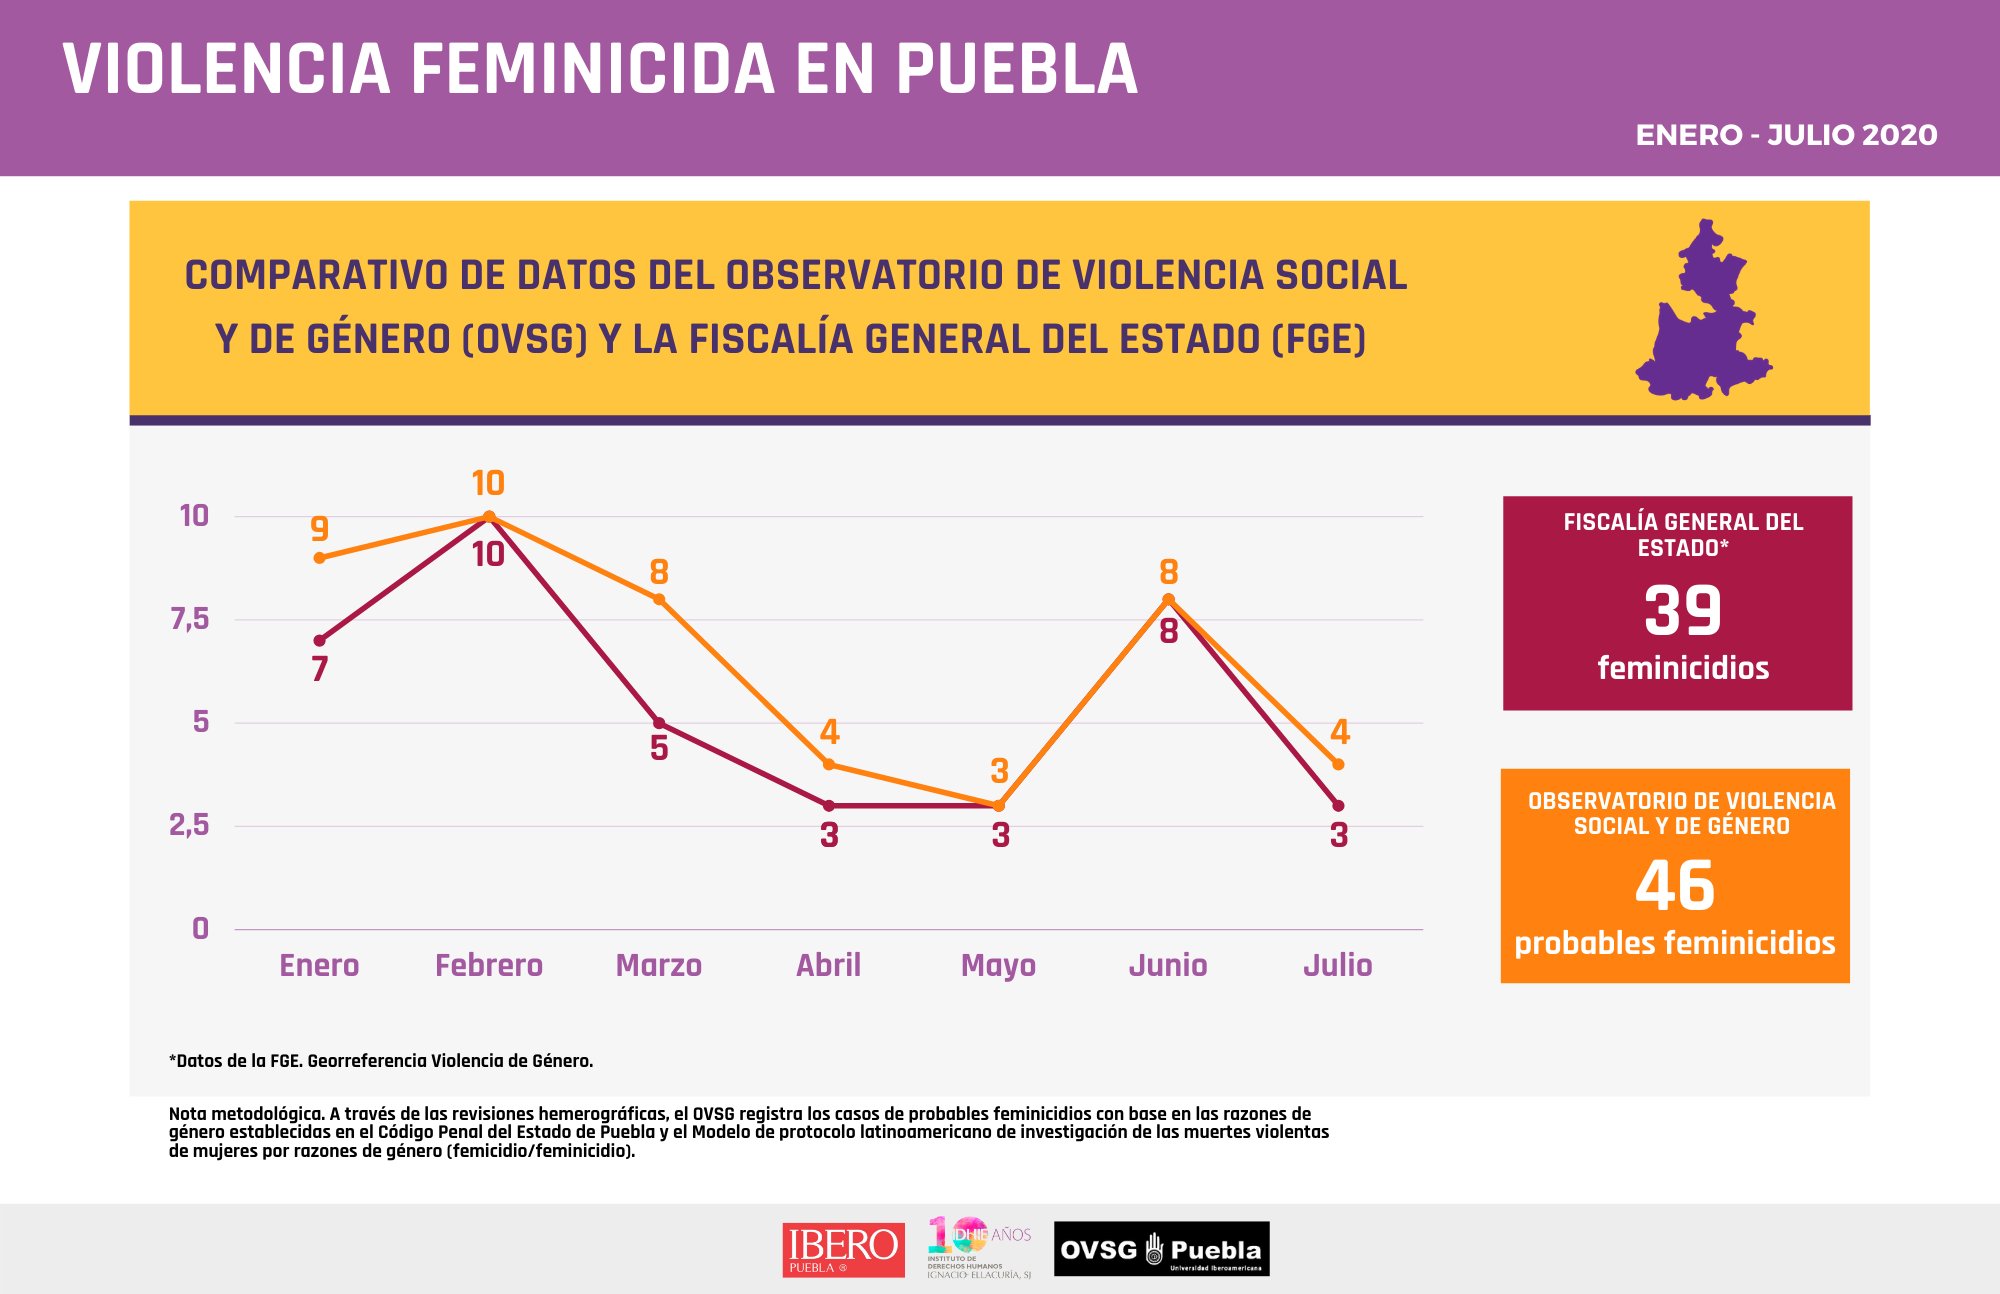 Documenta Observatorio de Ibero 7 casos más de feminicidios que FGE